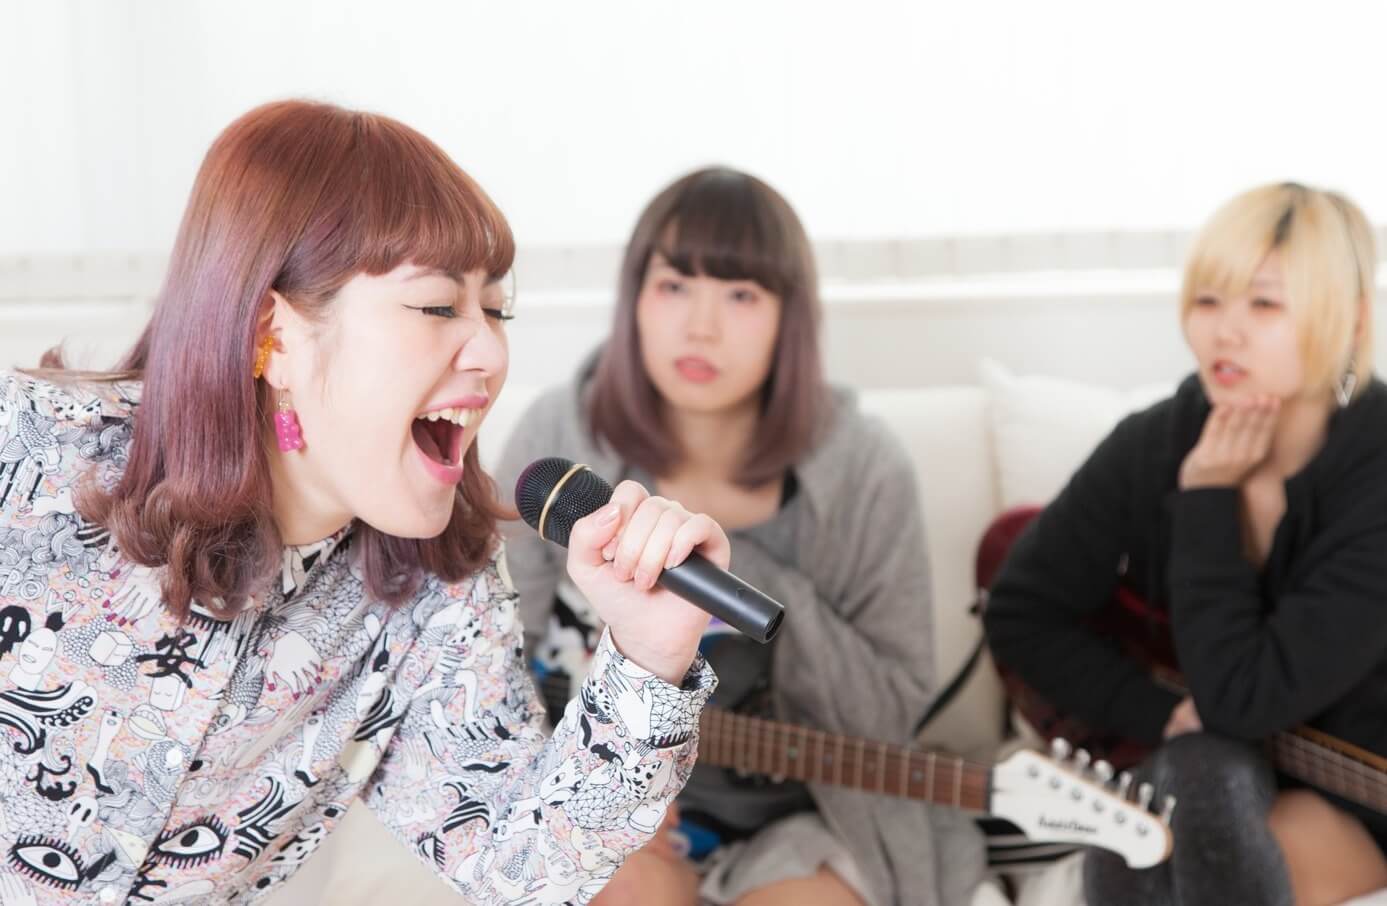 What is “karaoke”?